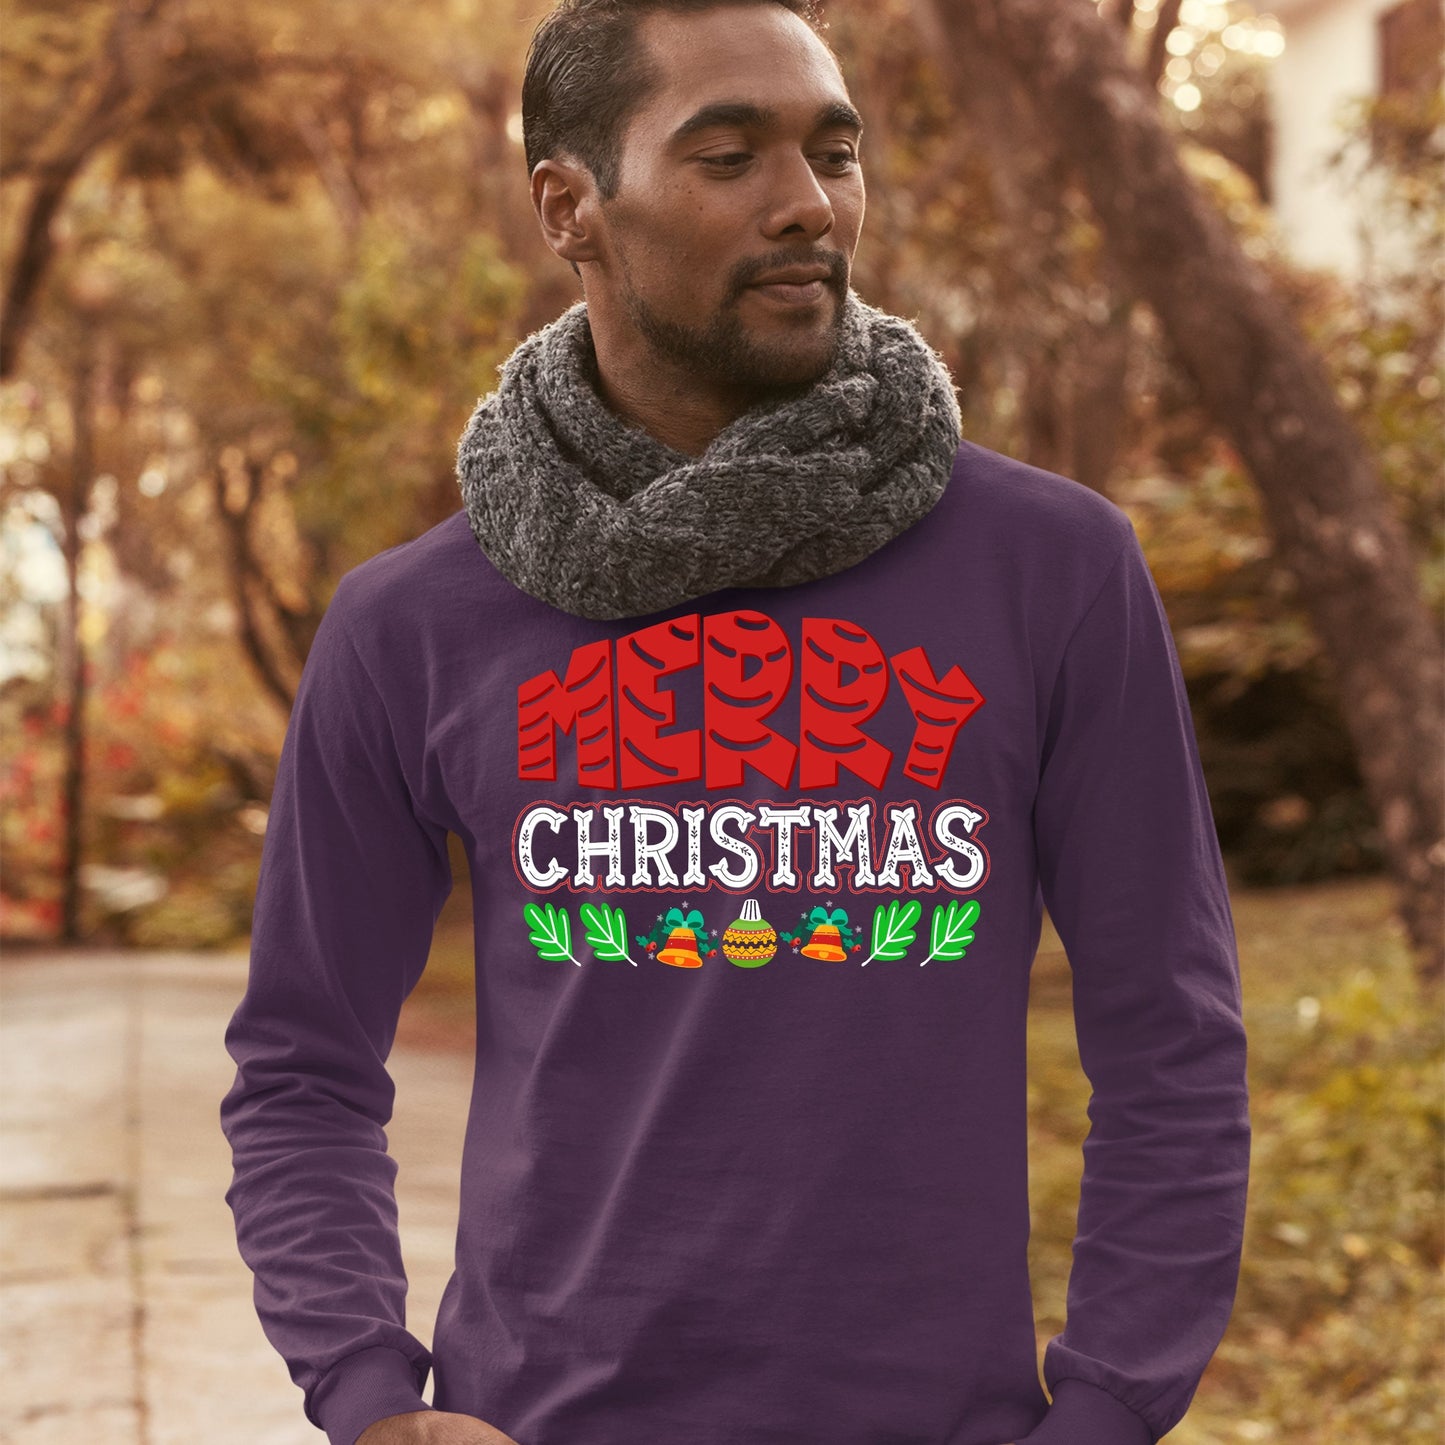 Merry Christmas, Christmas Long Sleeves, Christmas Crewneck For Men, Christmas Present, Christmas Sweatshirt, Christmas Sweater